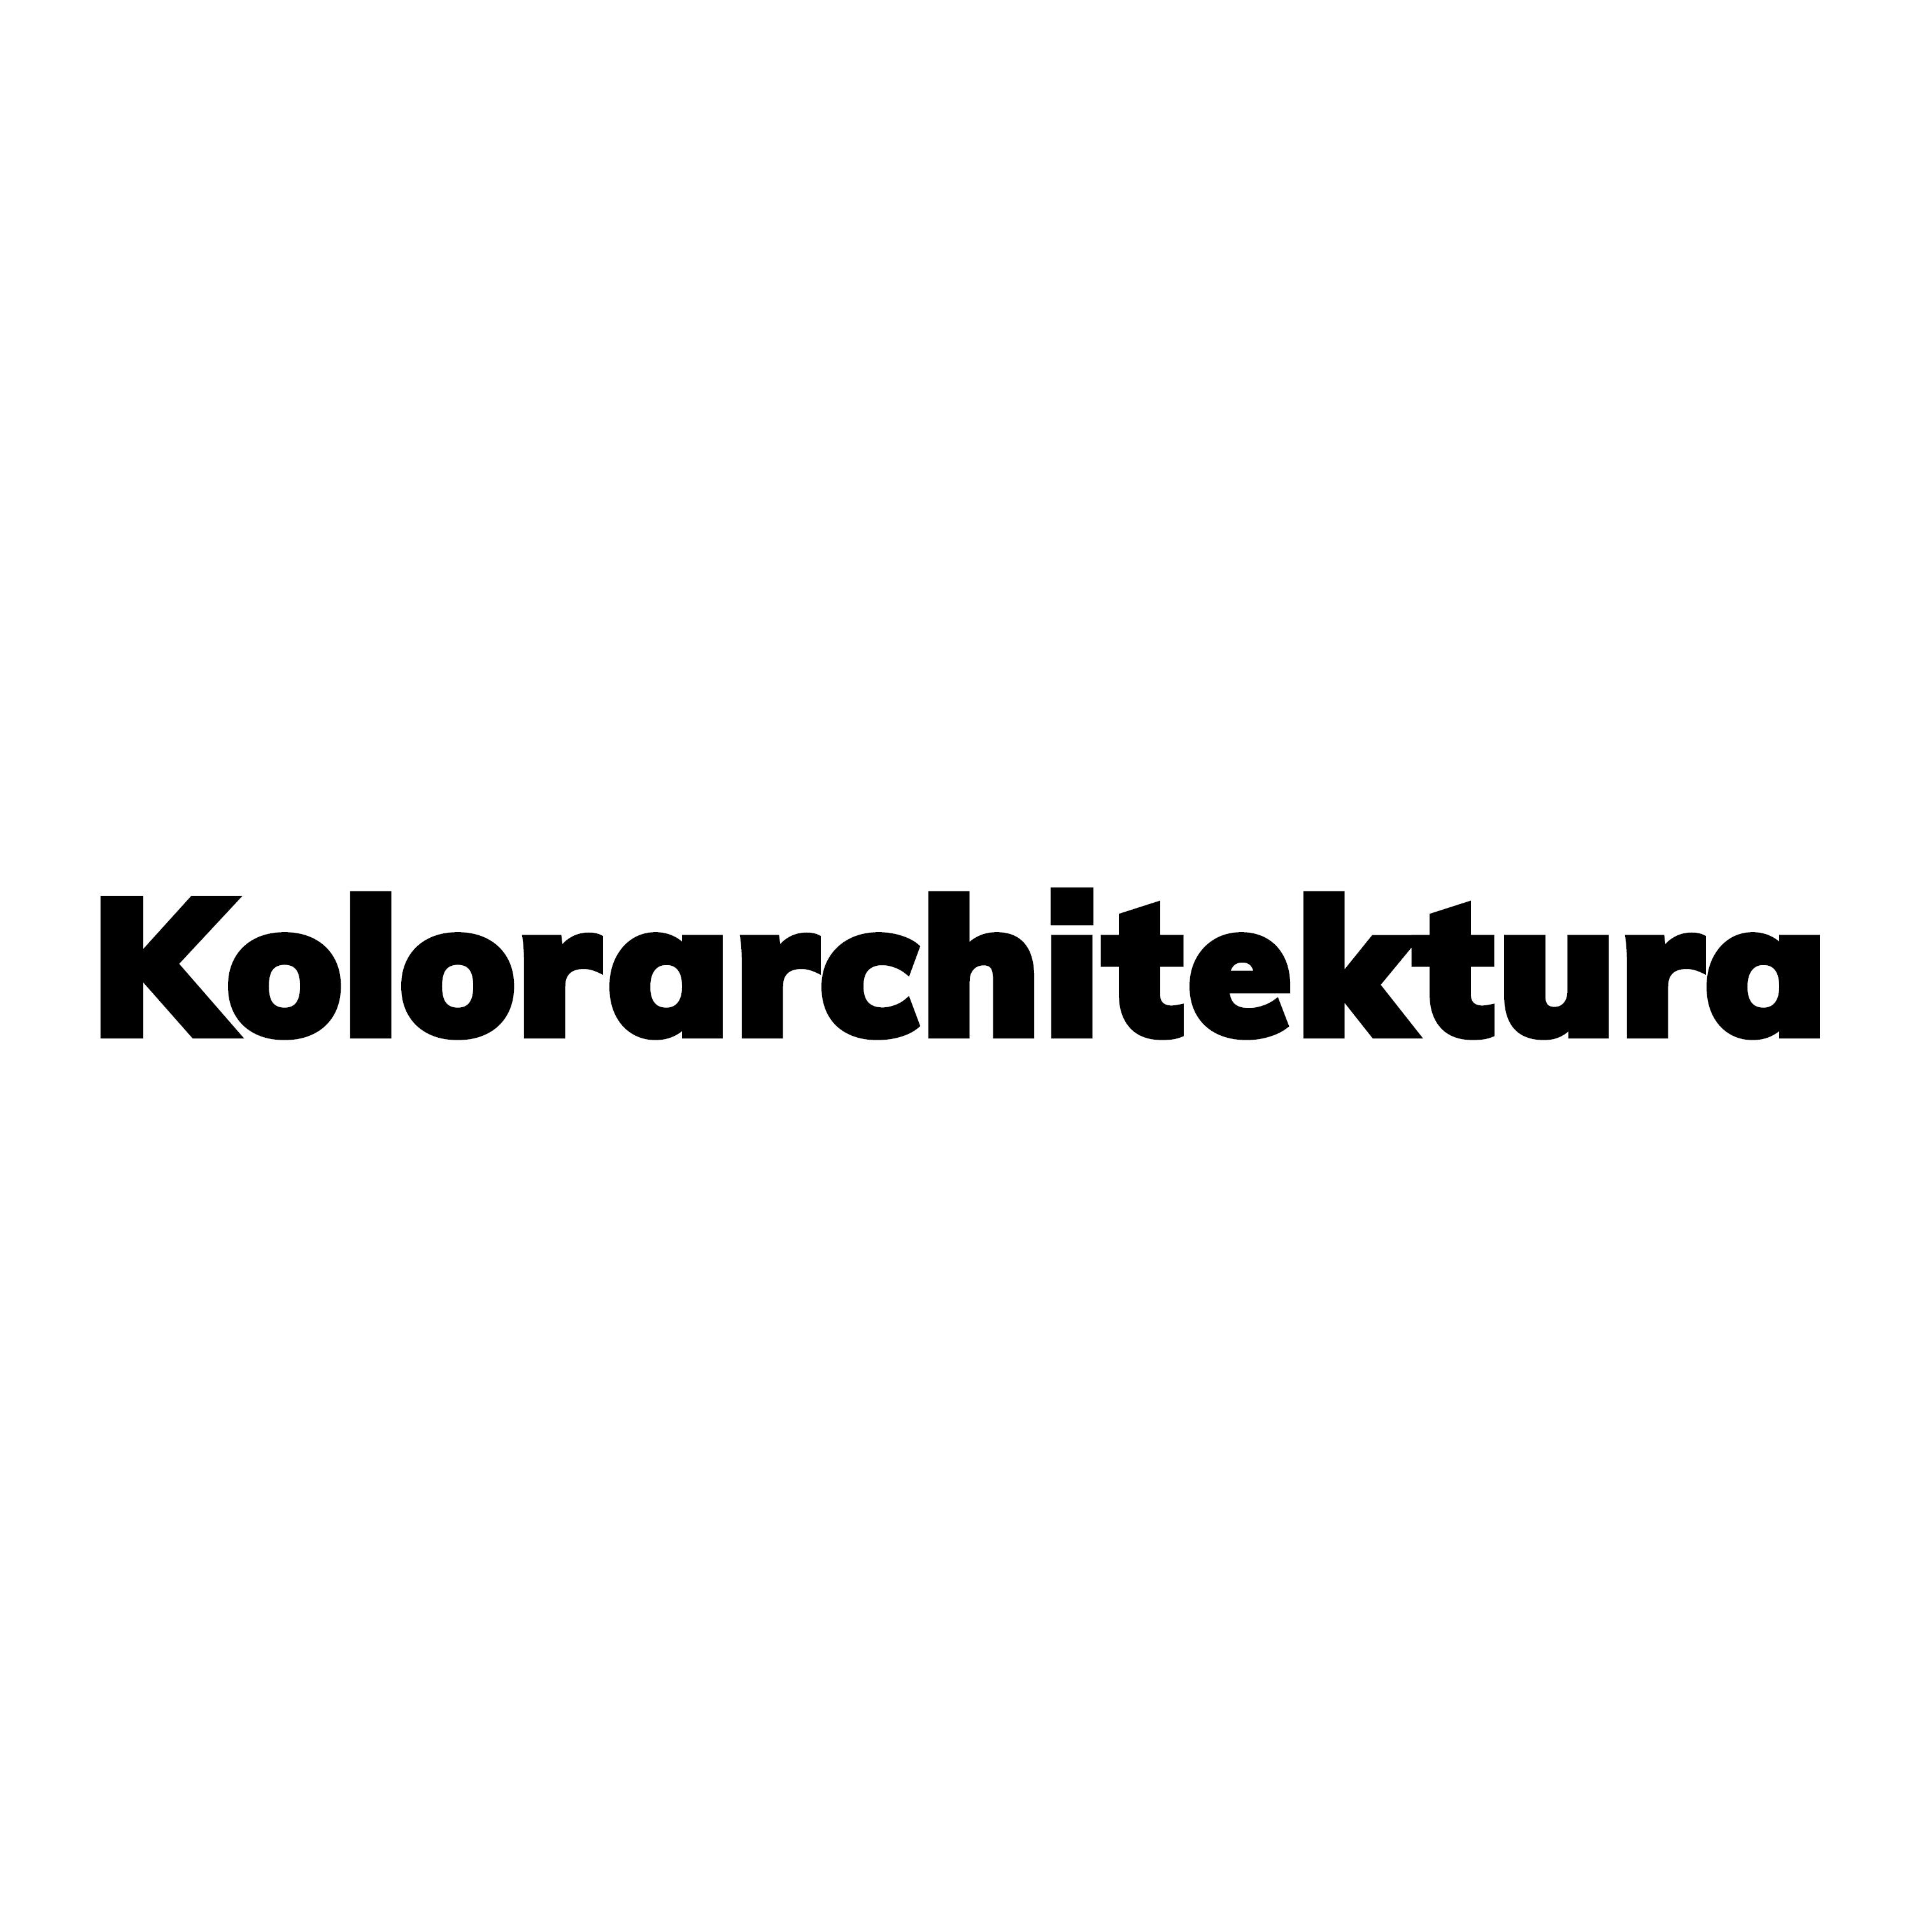 KOLORARCHITEKTURA - ARCHITEKT BARTOSZ WOLNY-logo